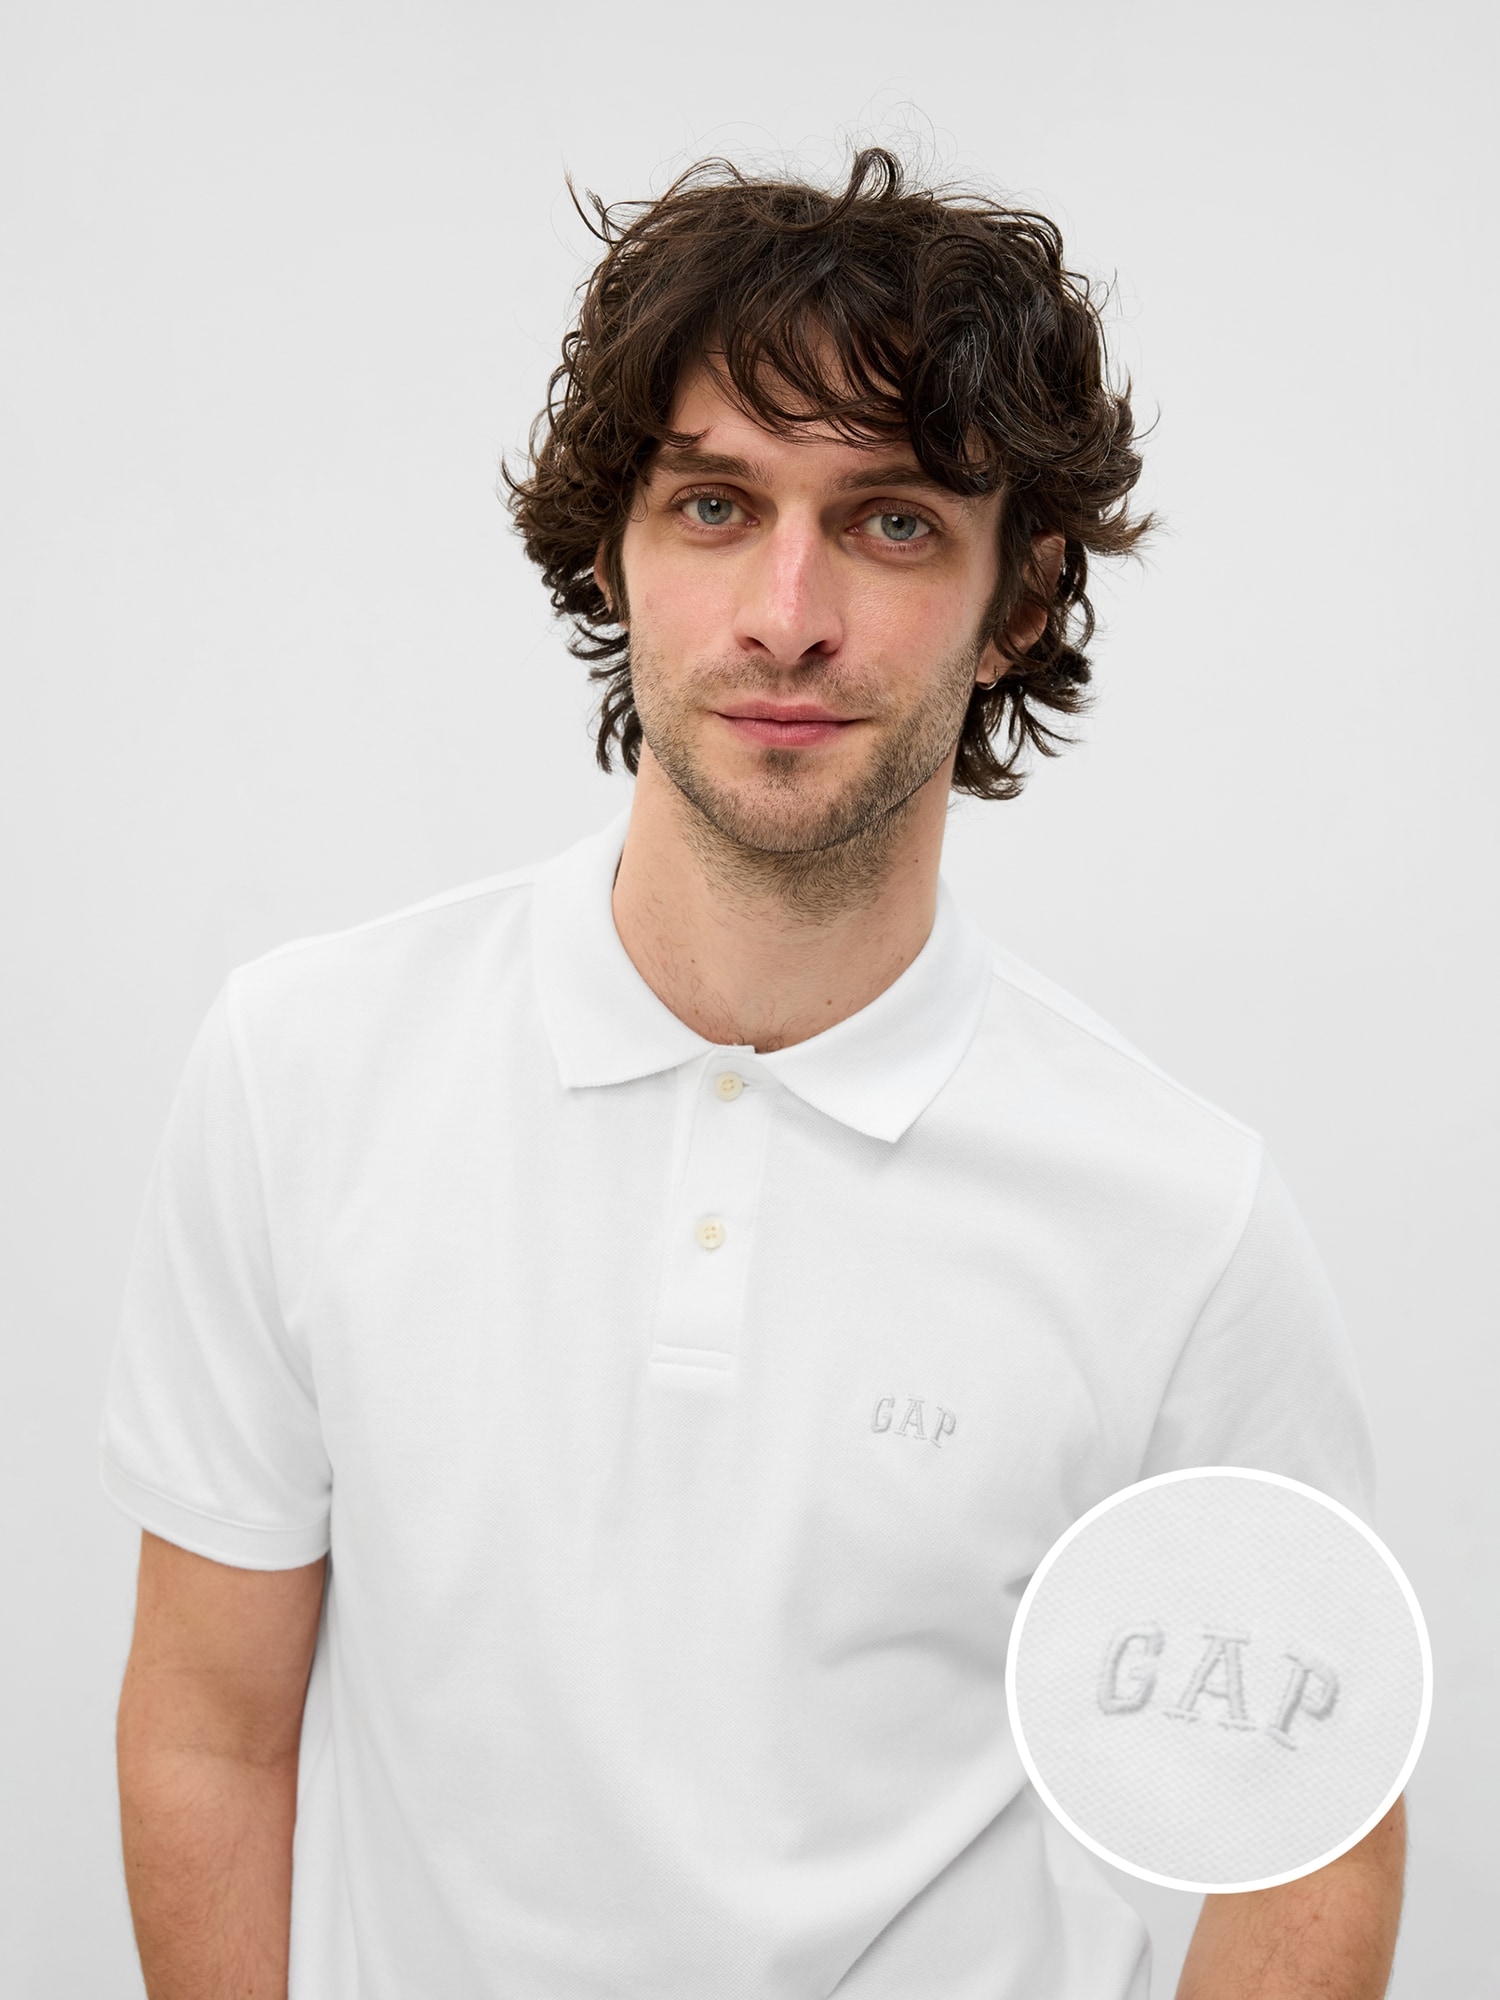 Gap公式オンラインストア | GAPロゴ ポロシャツ(ユニセックス)